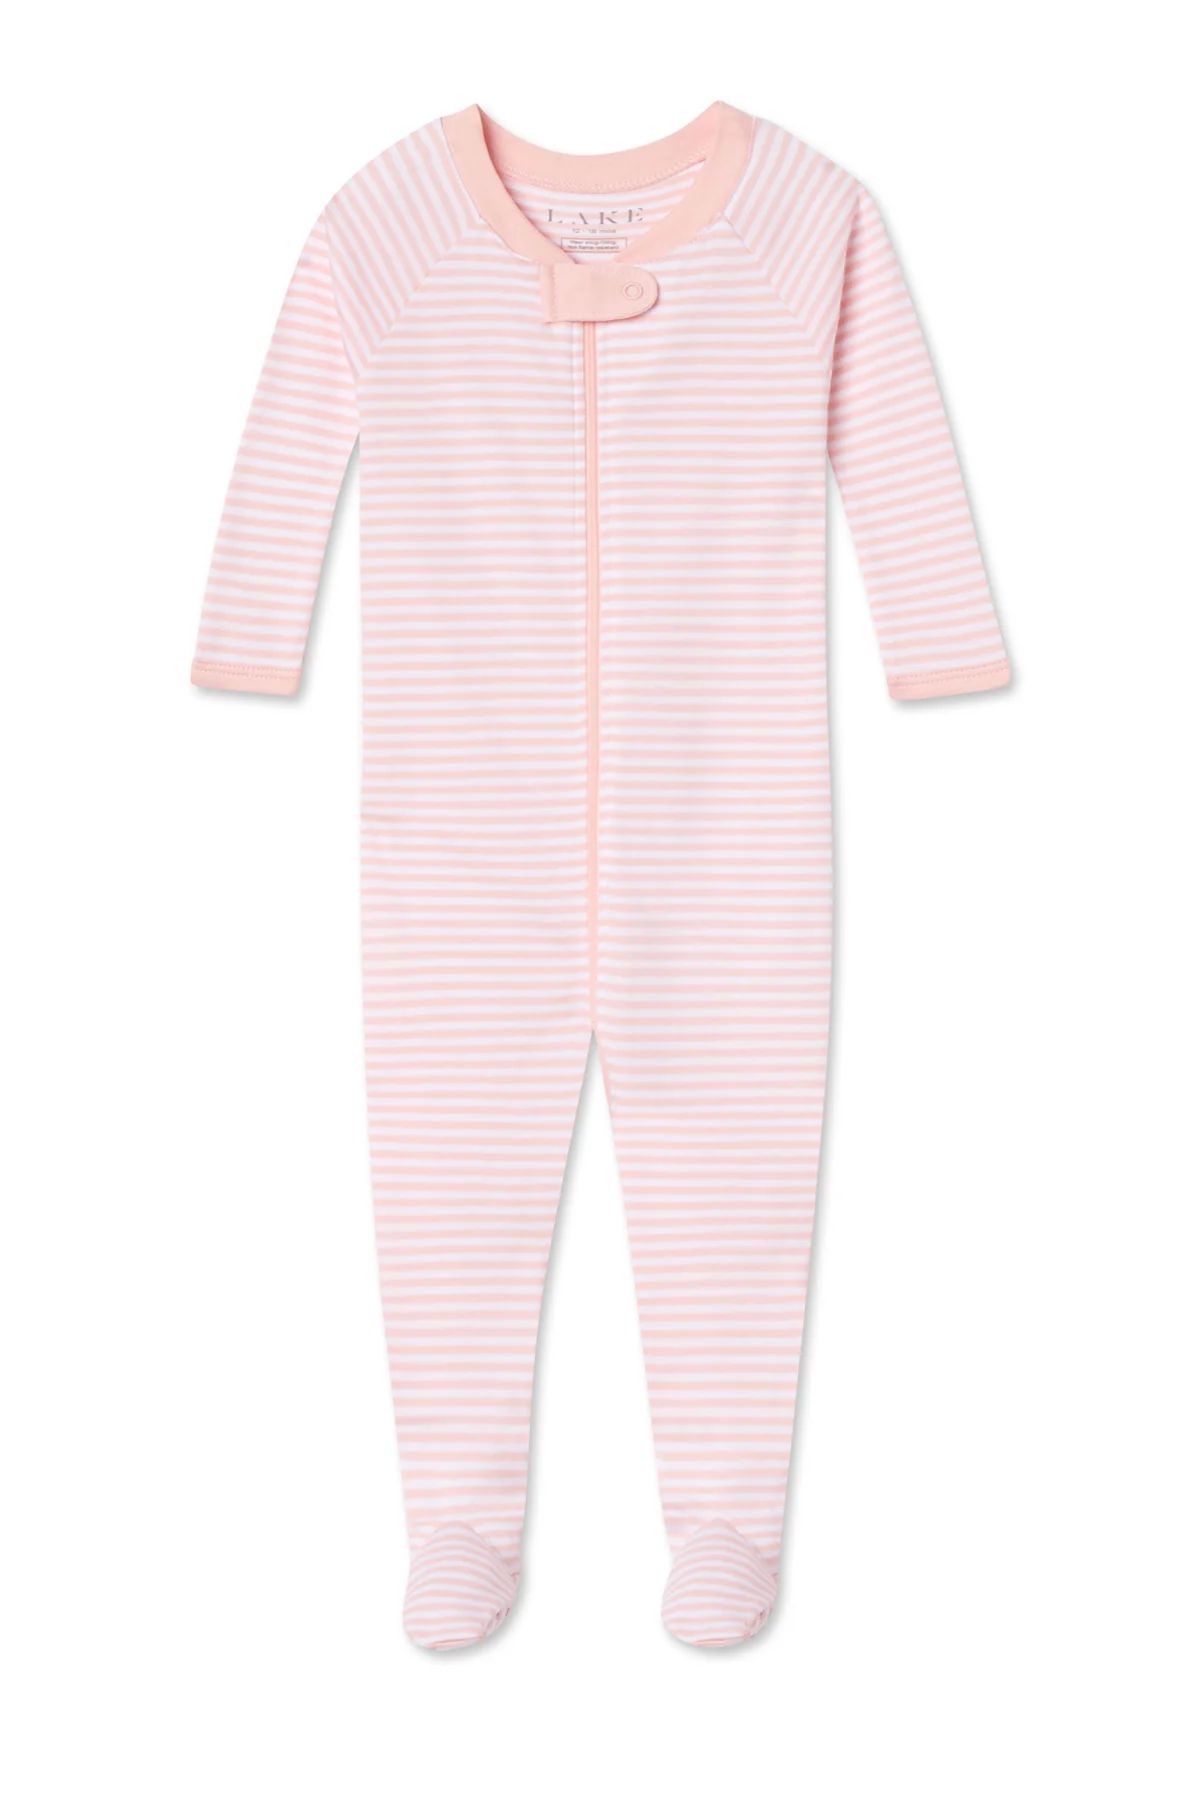 Baby Sleeper in English Rose Stripe | Lake Pajamas